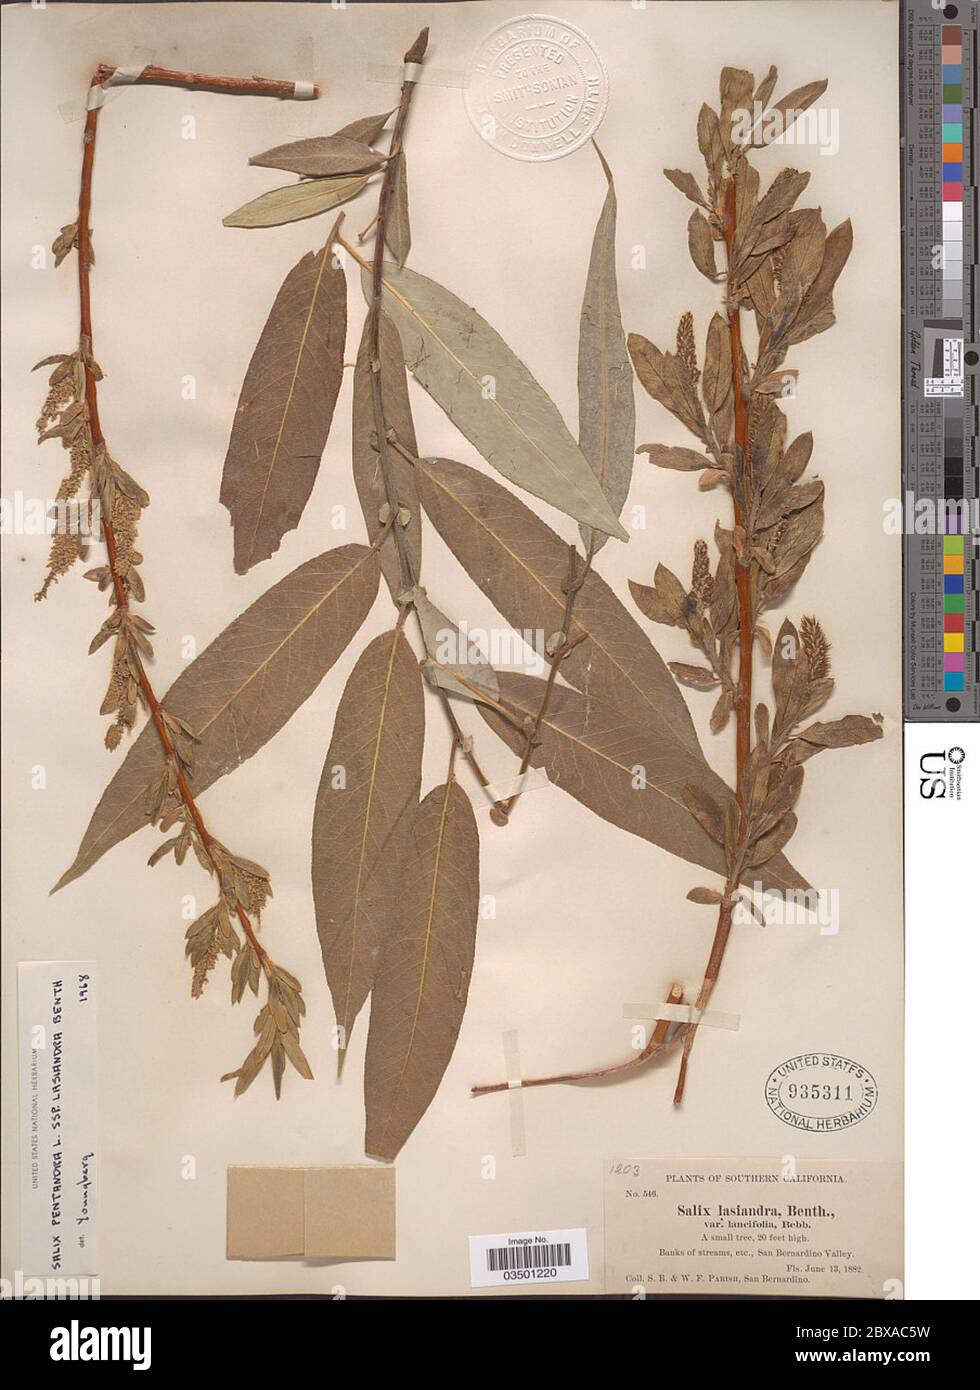 Salix lasiandra var lancifolia Bebb Salix lasiandra var lancifolia Bebb. Stock Photo